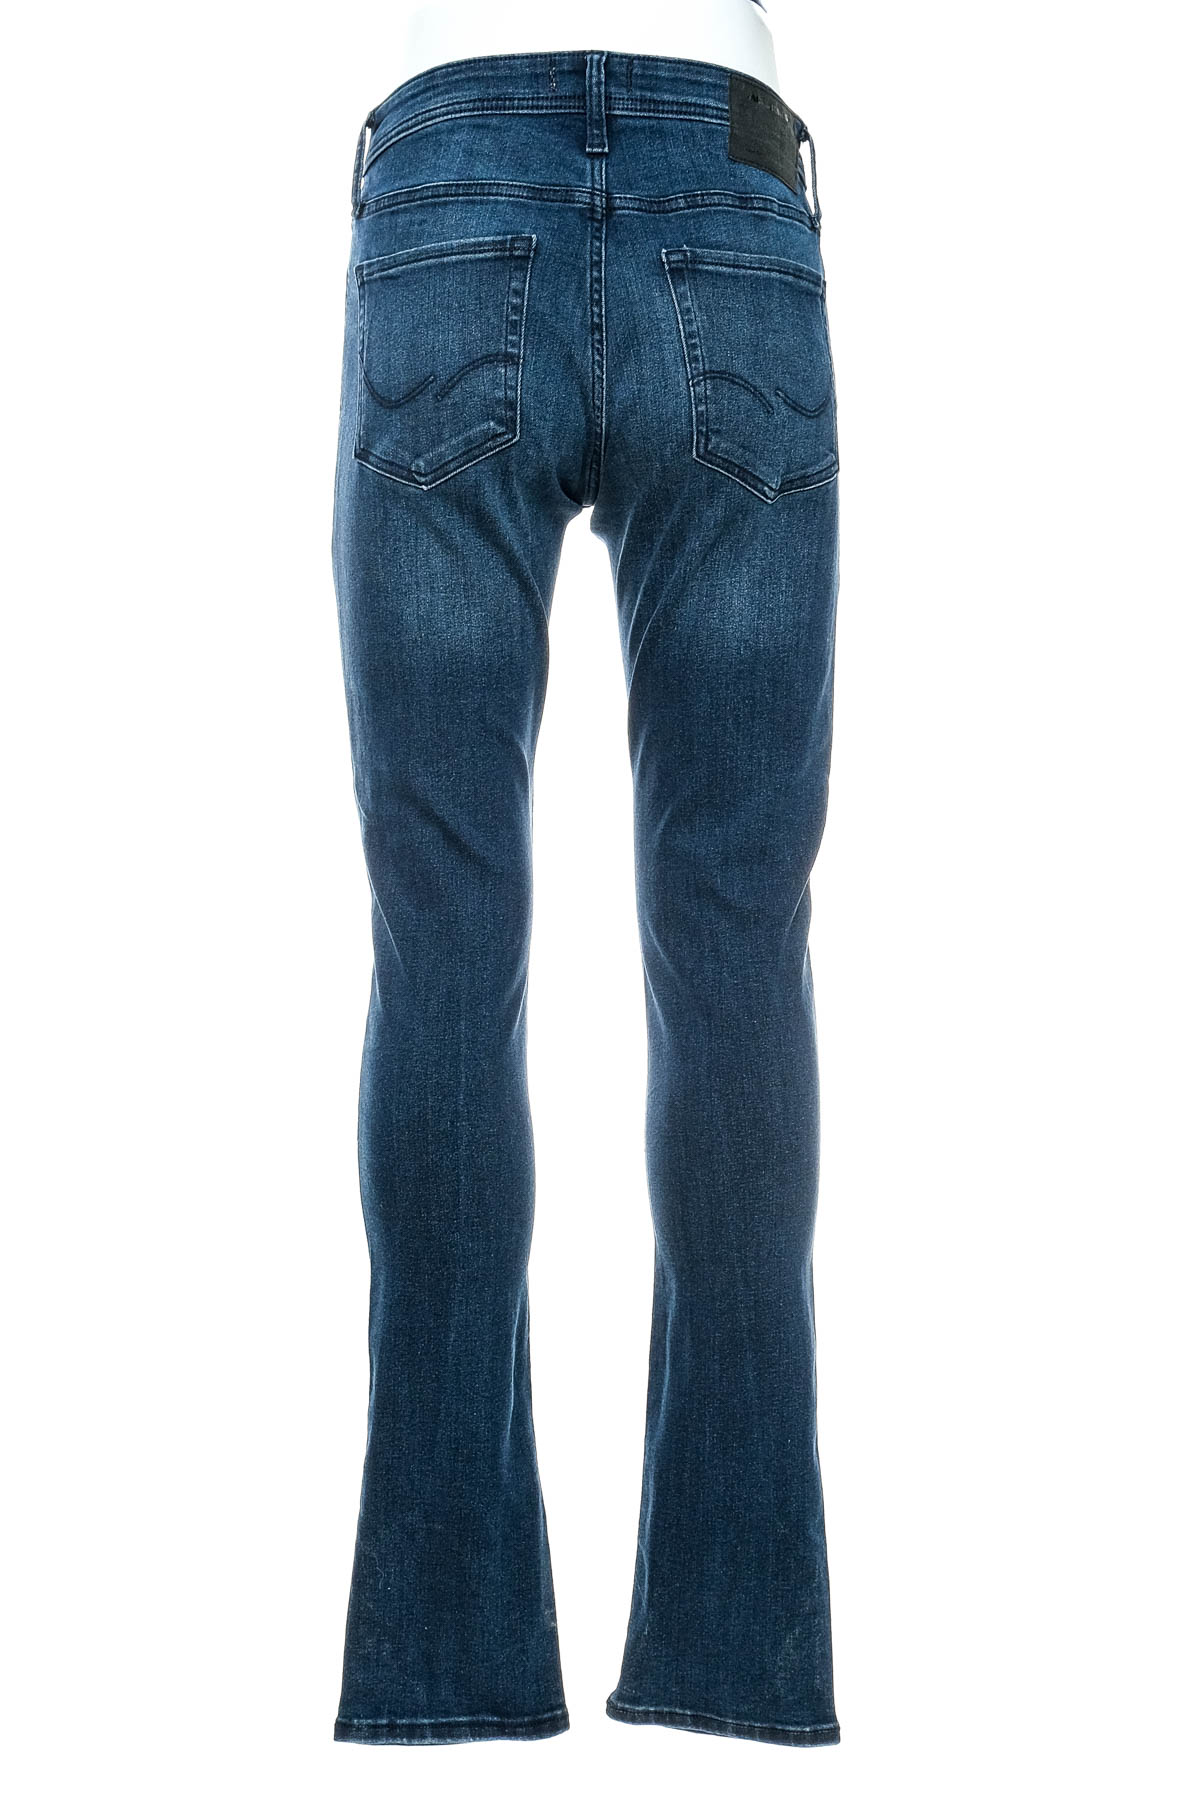 Men's jeans - JACK & JONES - 1